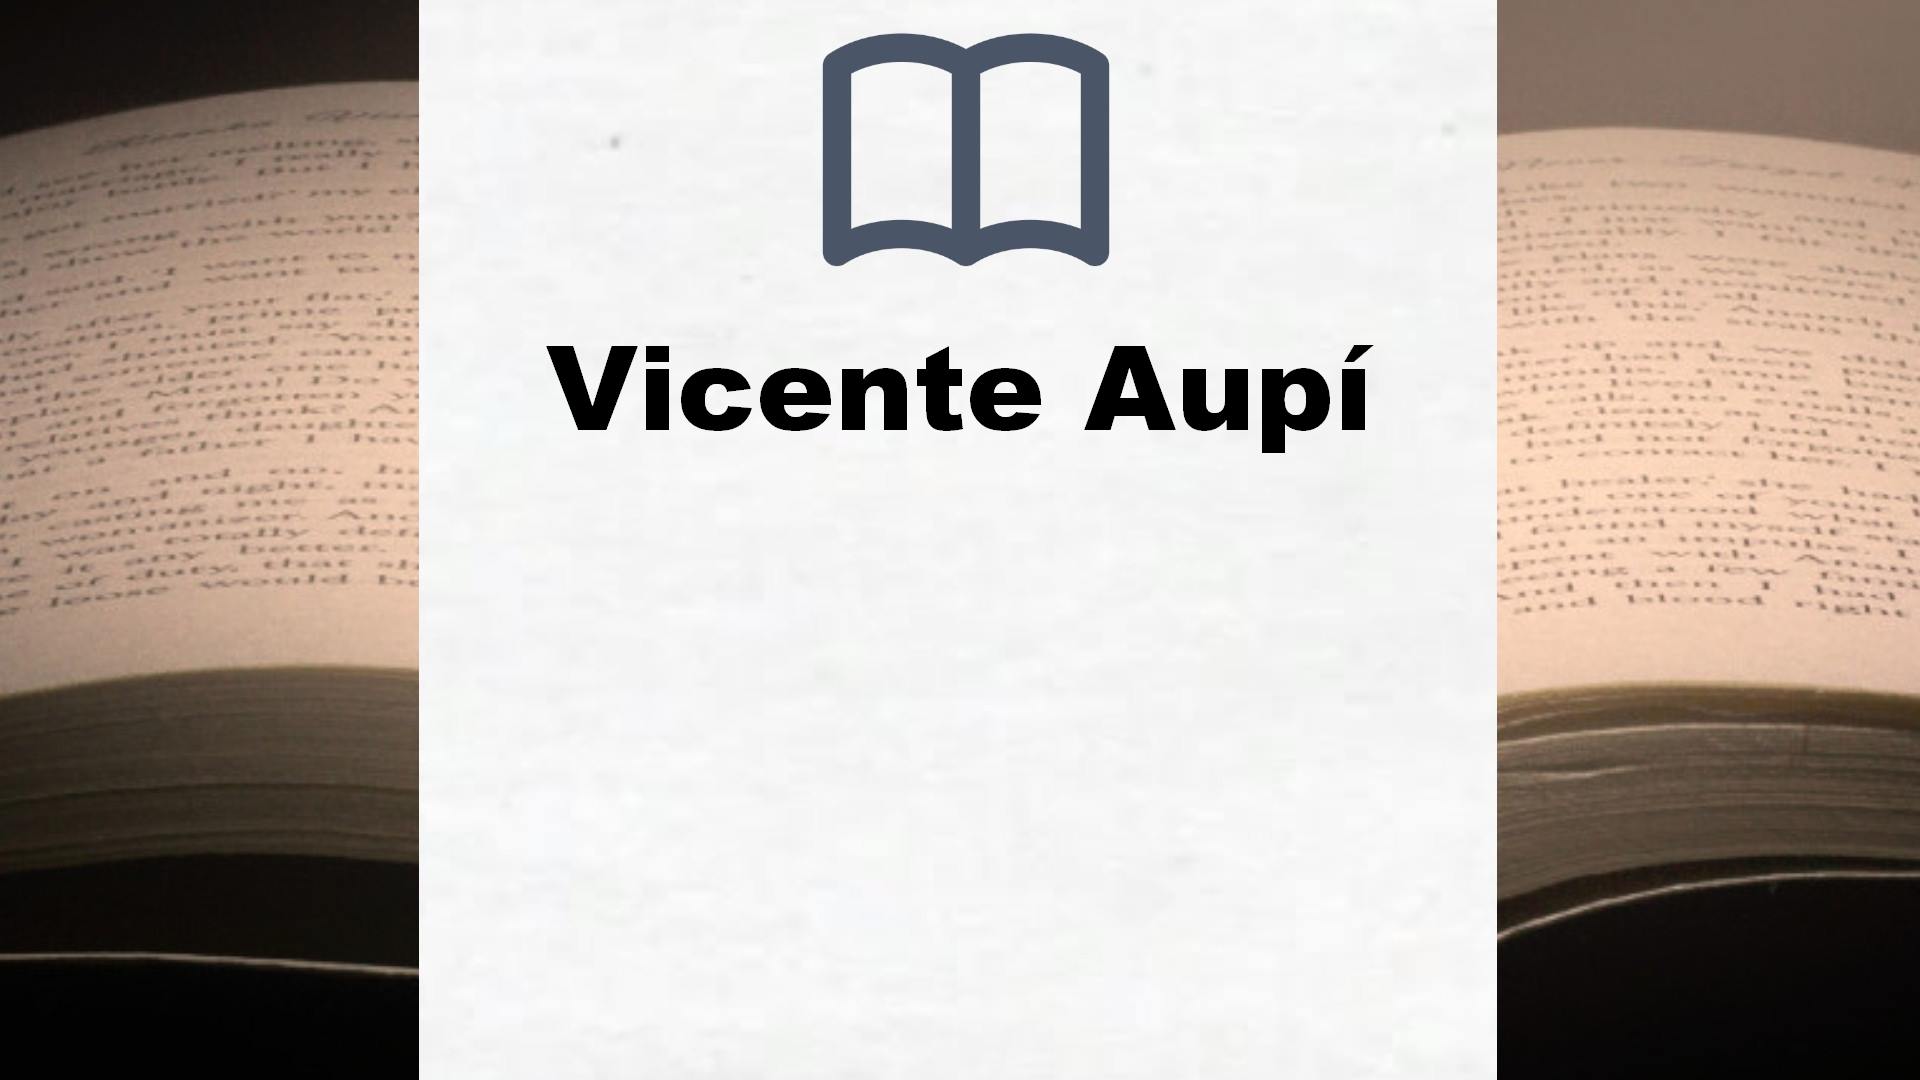 Libros Vicente Aupí